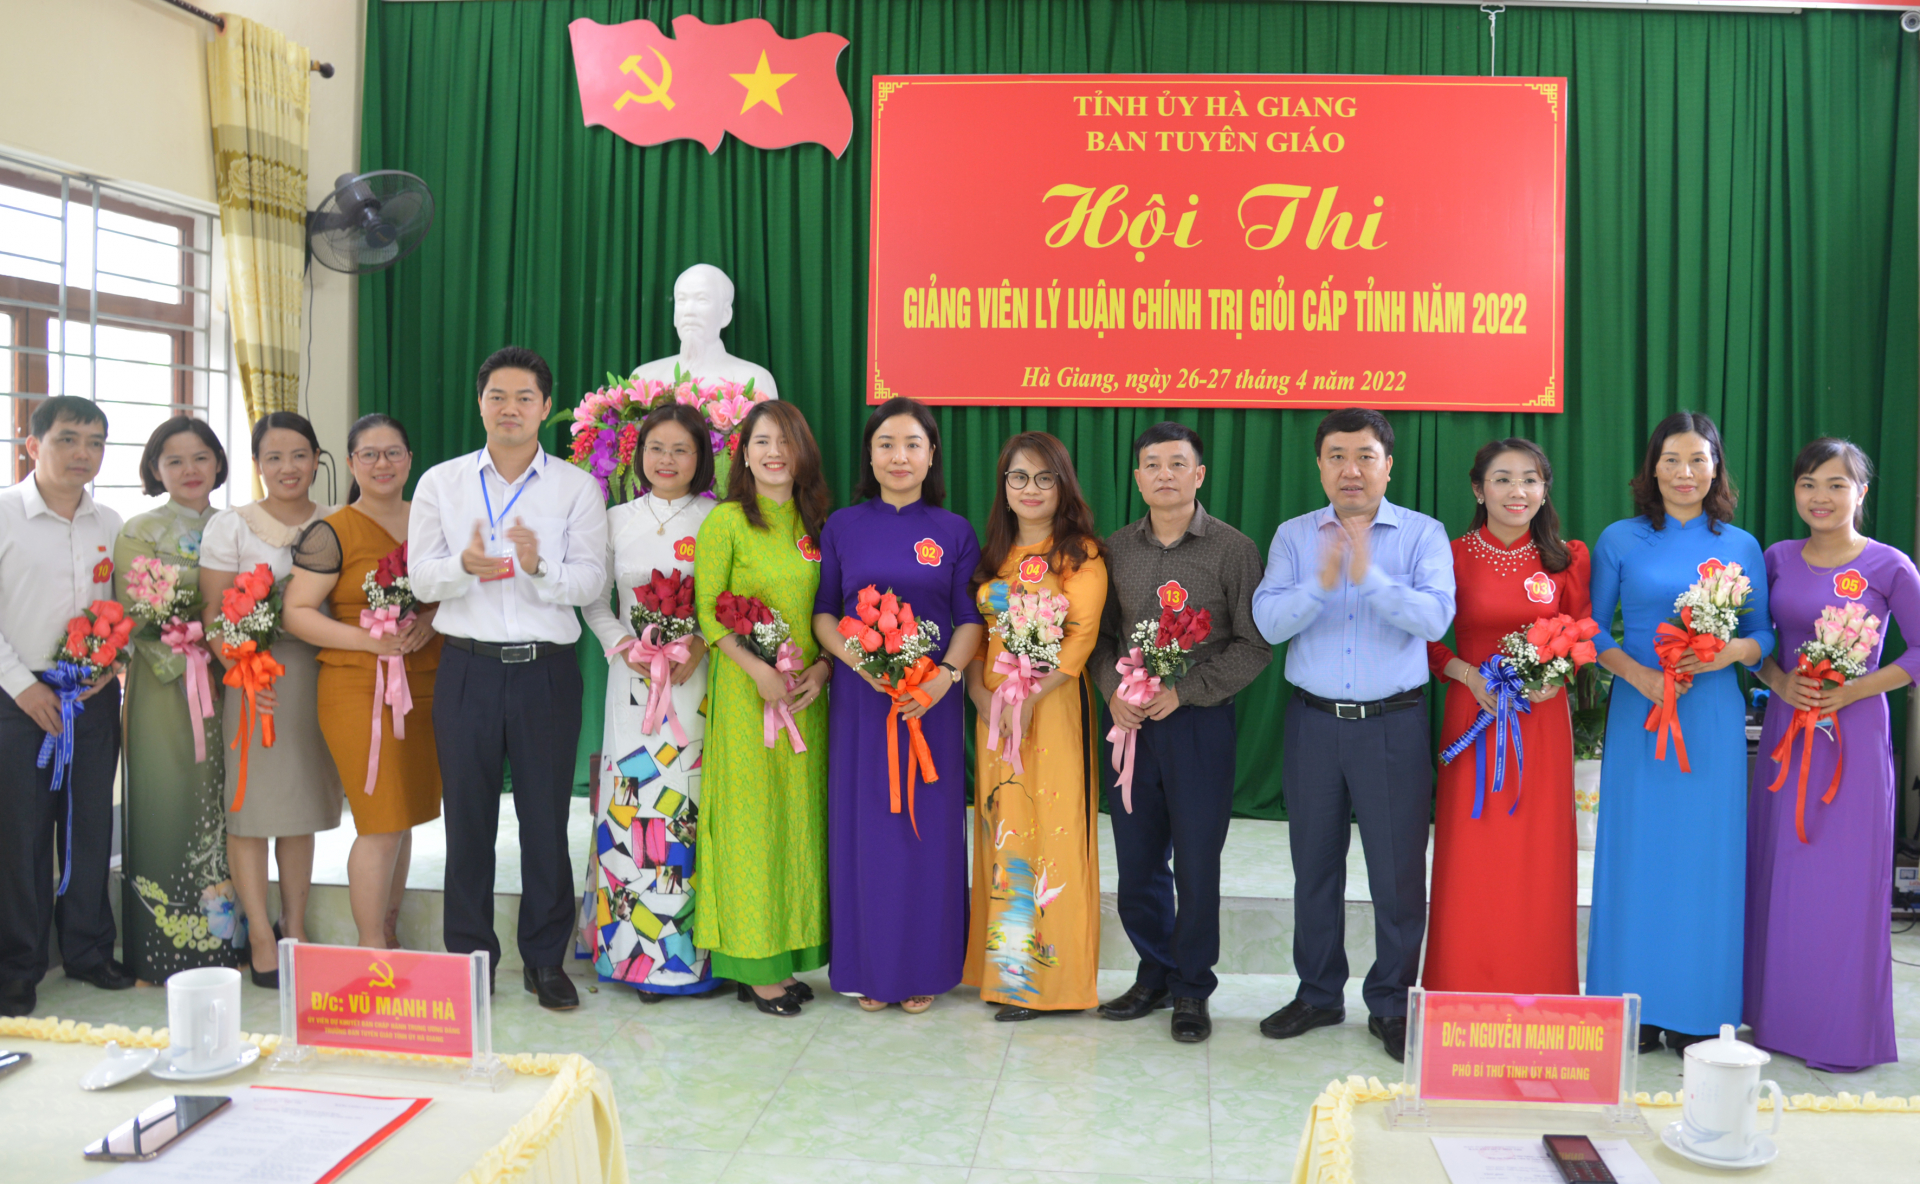 Phó Bí thư Tỉnh ủy Nguyễn Mạnh Dũng và Trưởng ban Tuyên giáo Tỉnh ủy Vũ Mạnh Hà tặng hoa cho các thí sinh tham gia hội thi.
